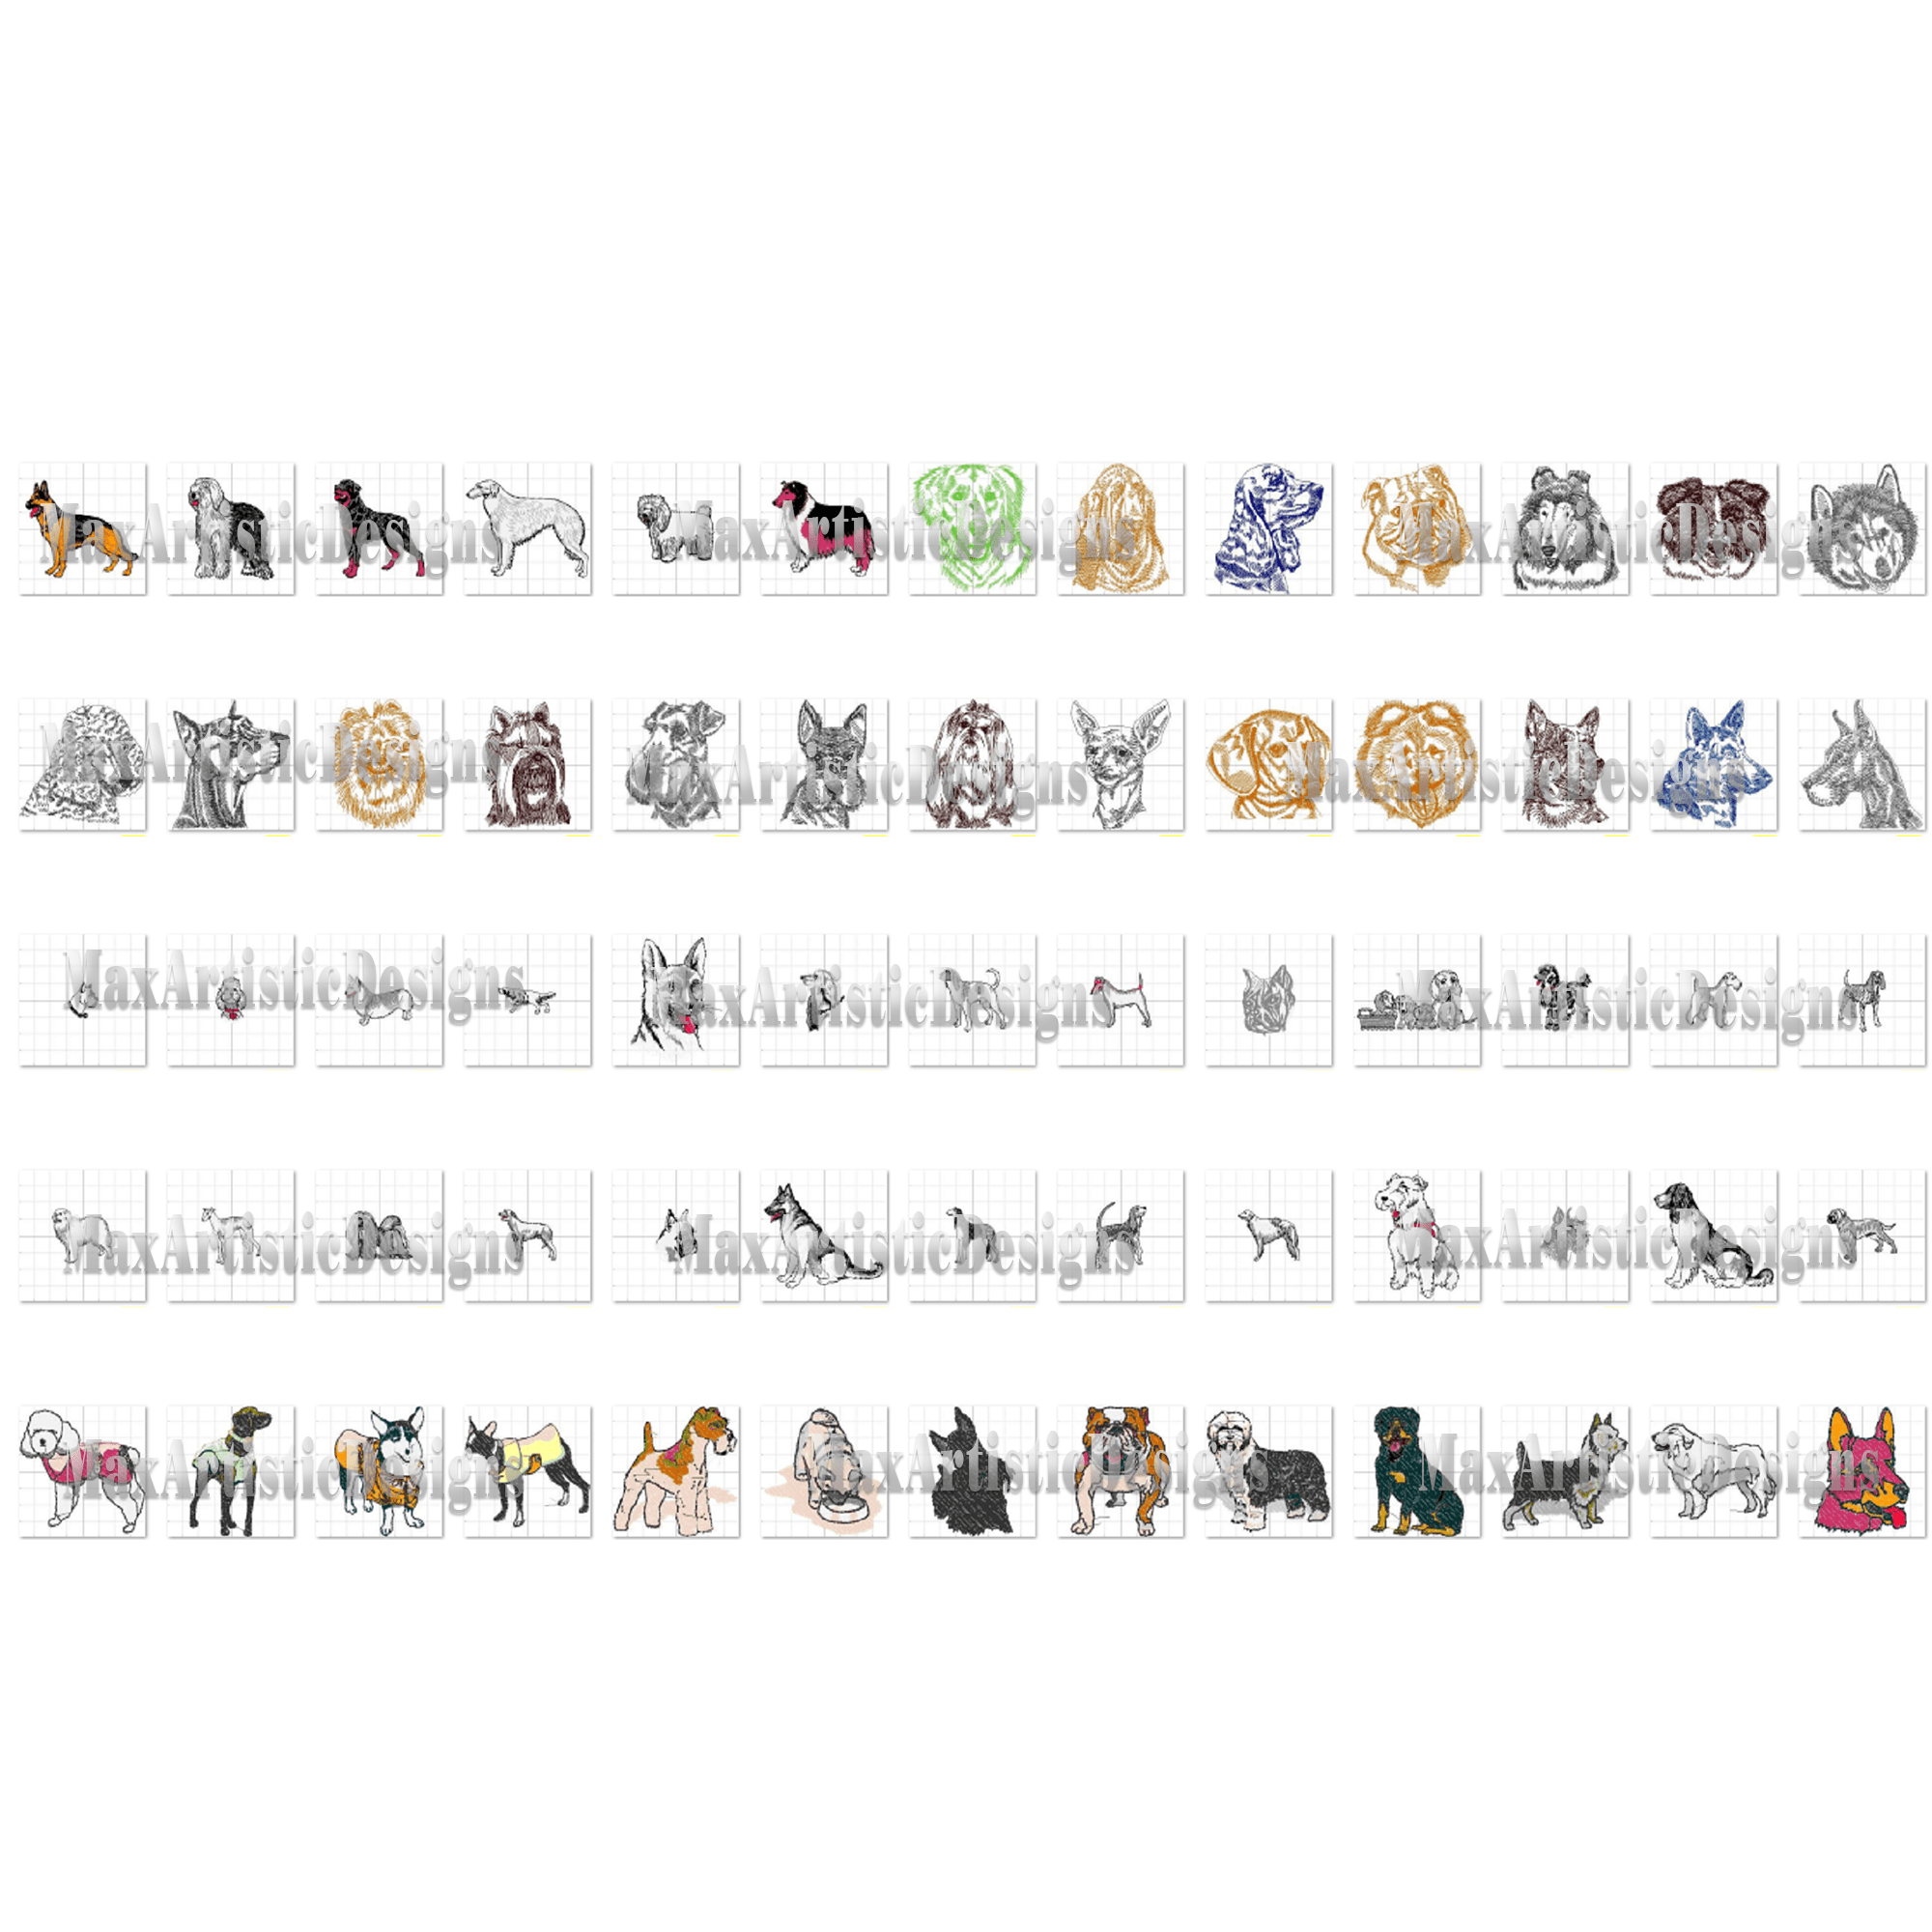 Plus de 550 motifs de broderie de chiens pour la broderie machine au format pes jpg à télécharger